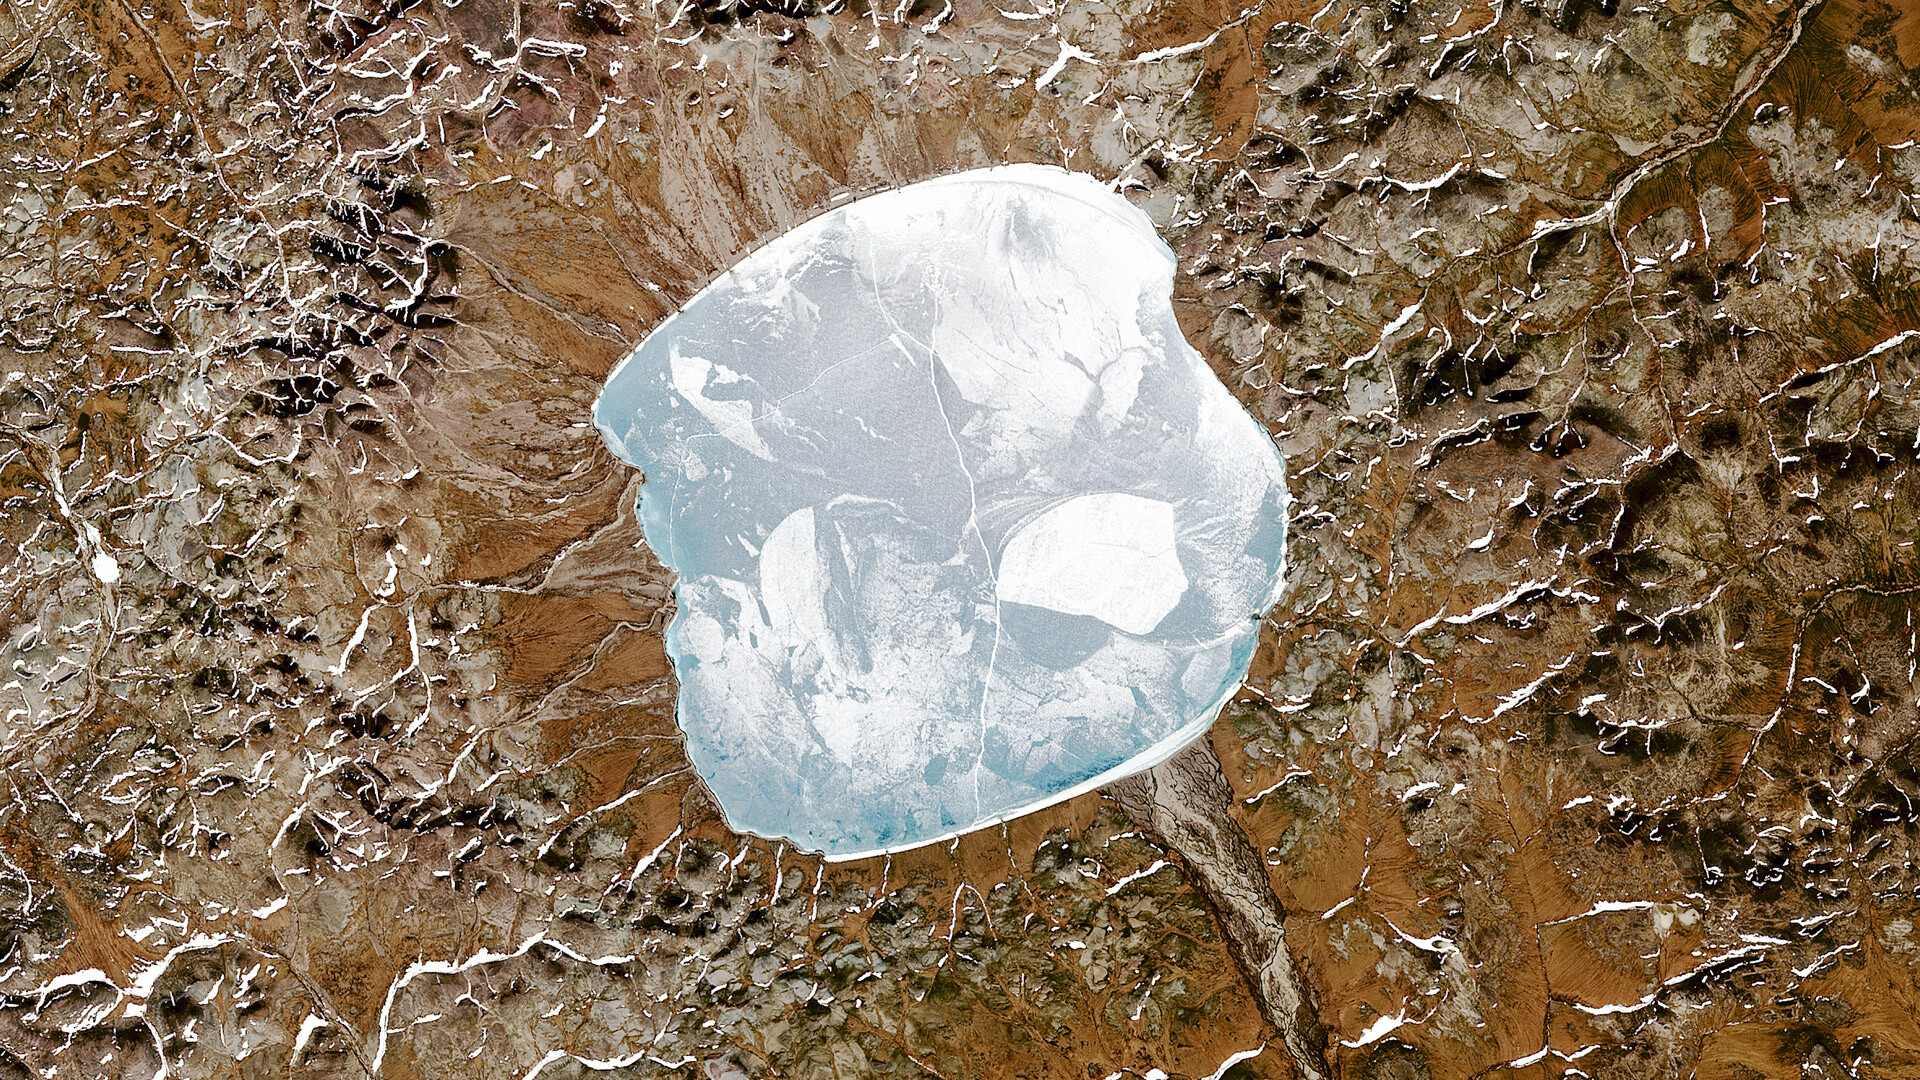 Satelitski posnetek jezera Elgigitgin, ki se nahaja znotraj majhnega kraterja po trku asteroida na vzhodu Rusije blizu polarnega kroga, 20. junija 2015. Udarni krater je star približno 3,6 milijona let.